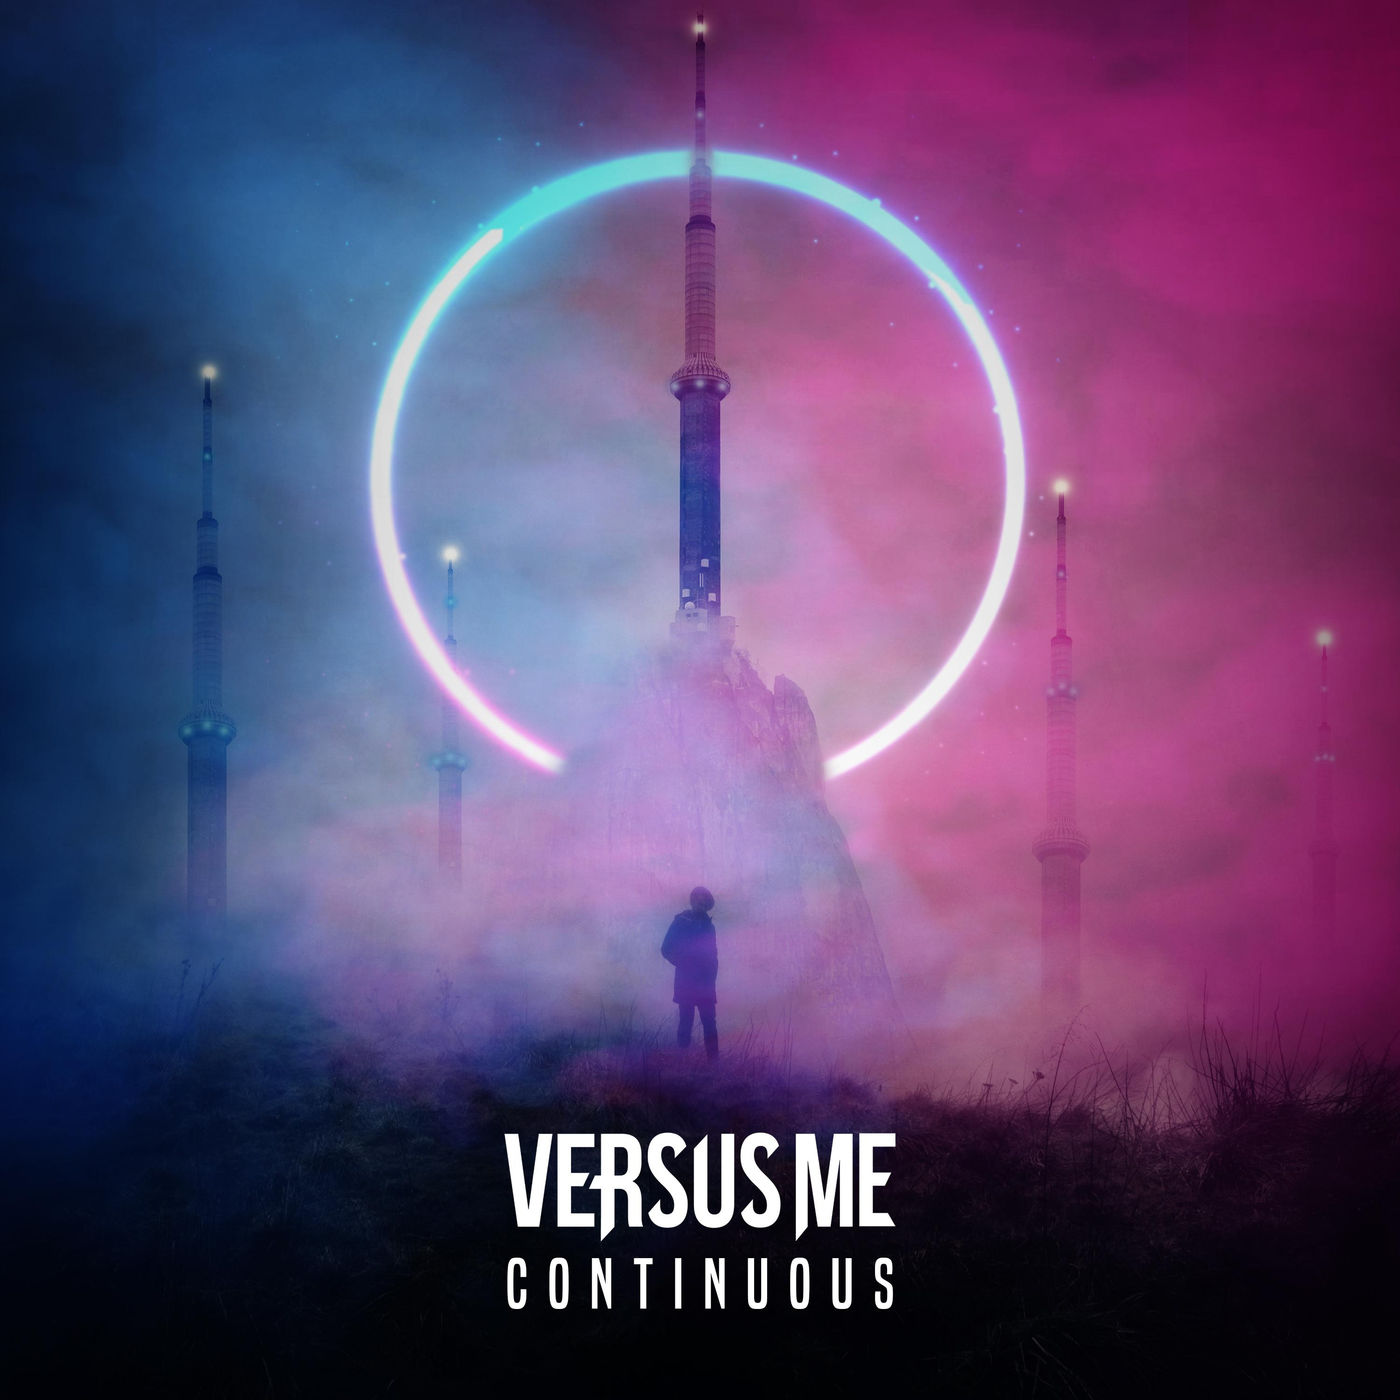 Versus Me - Continuous (2019)